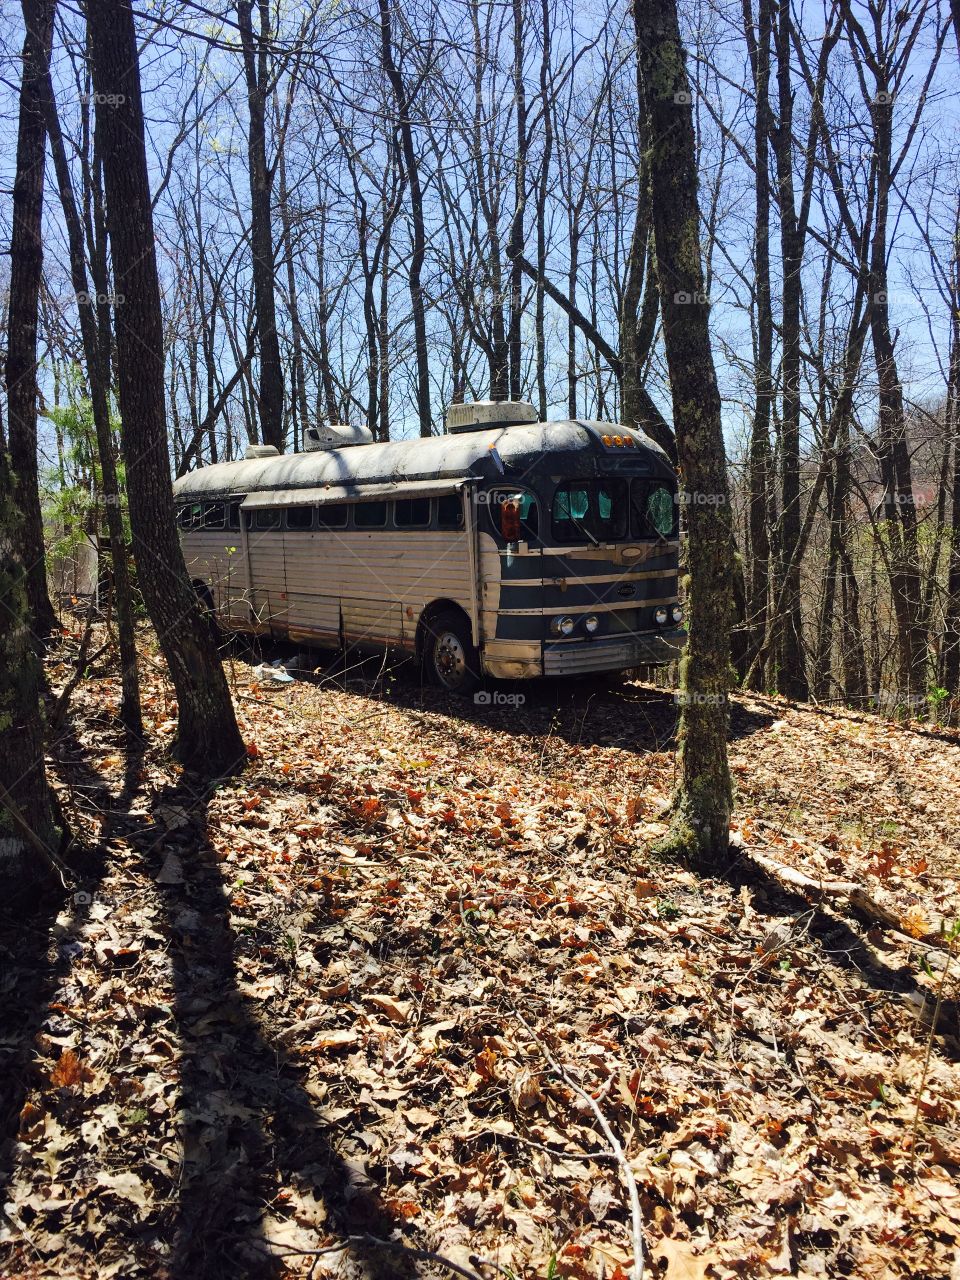 Abandoned travel bus